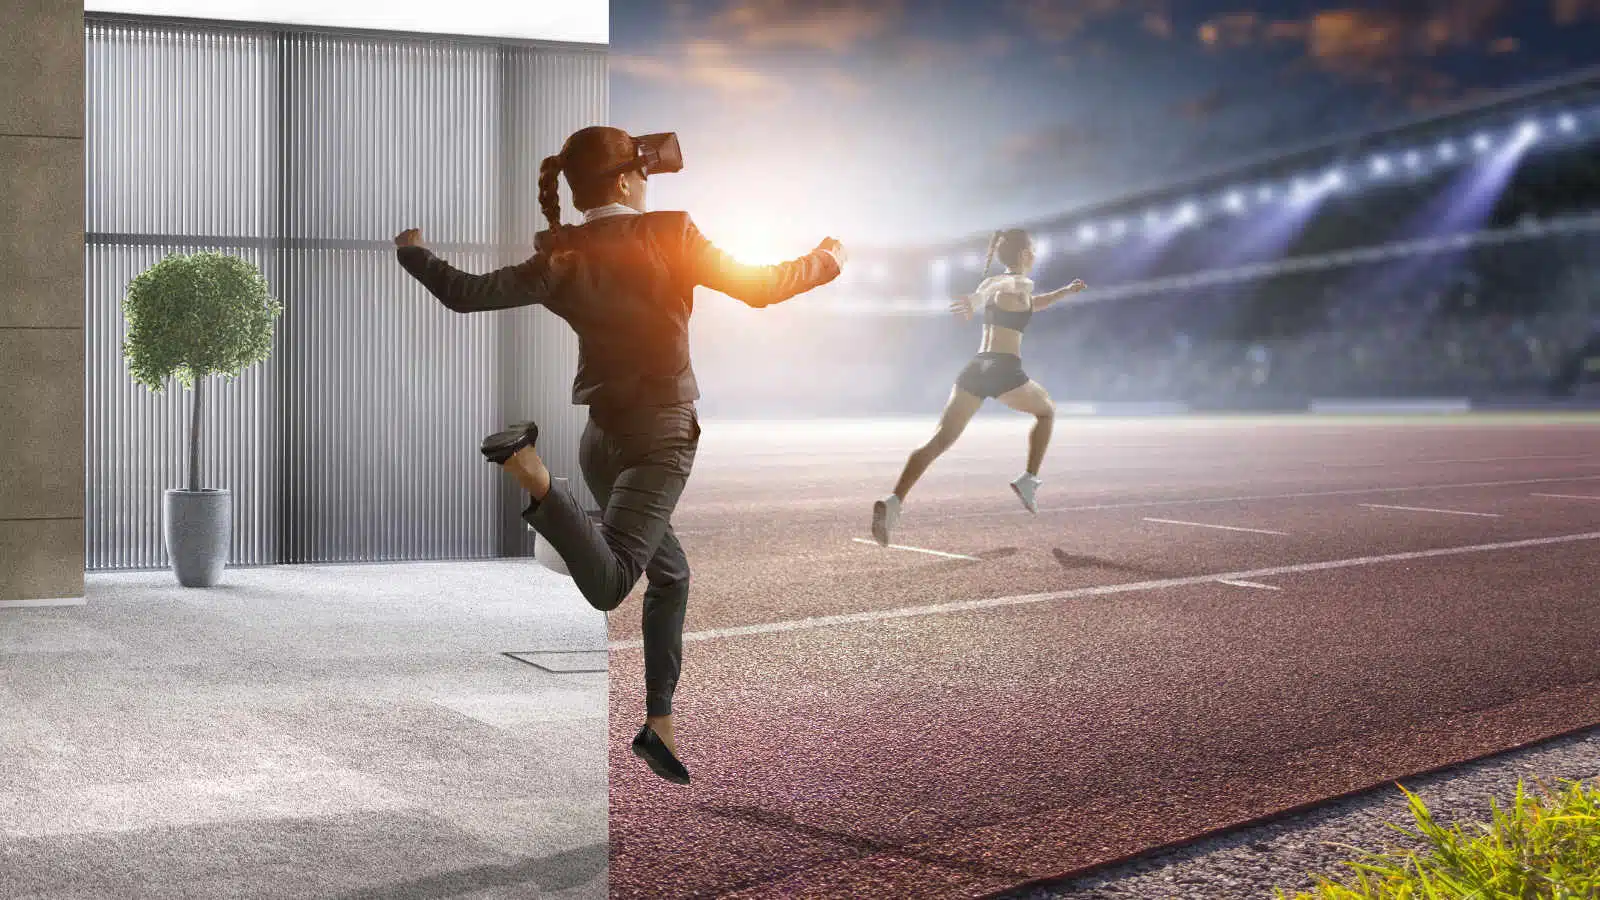 Realtà virtuale: i benefici dell'utilizzo in ambito sportivo - Psicologia